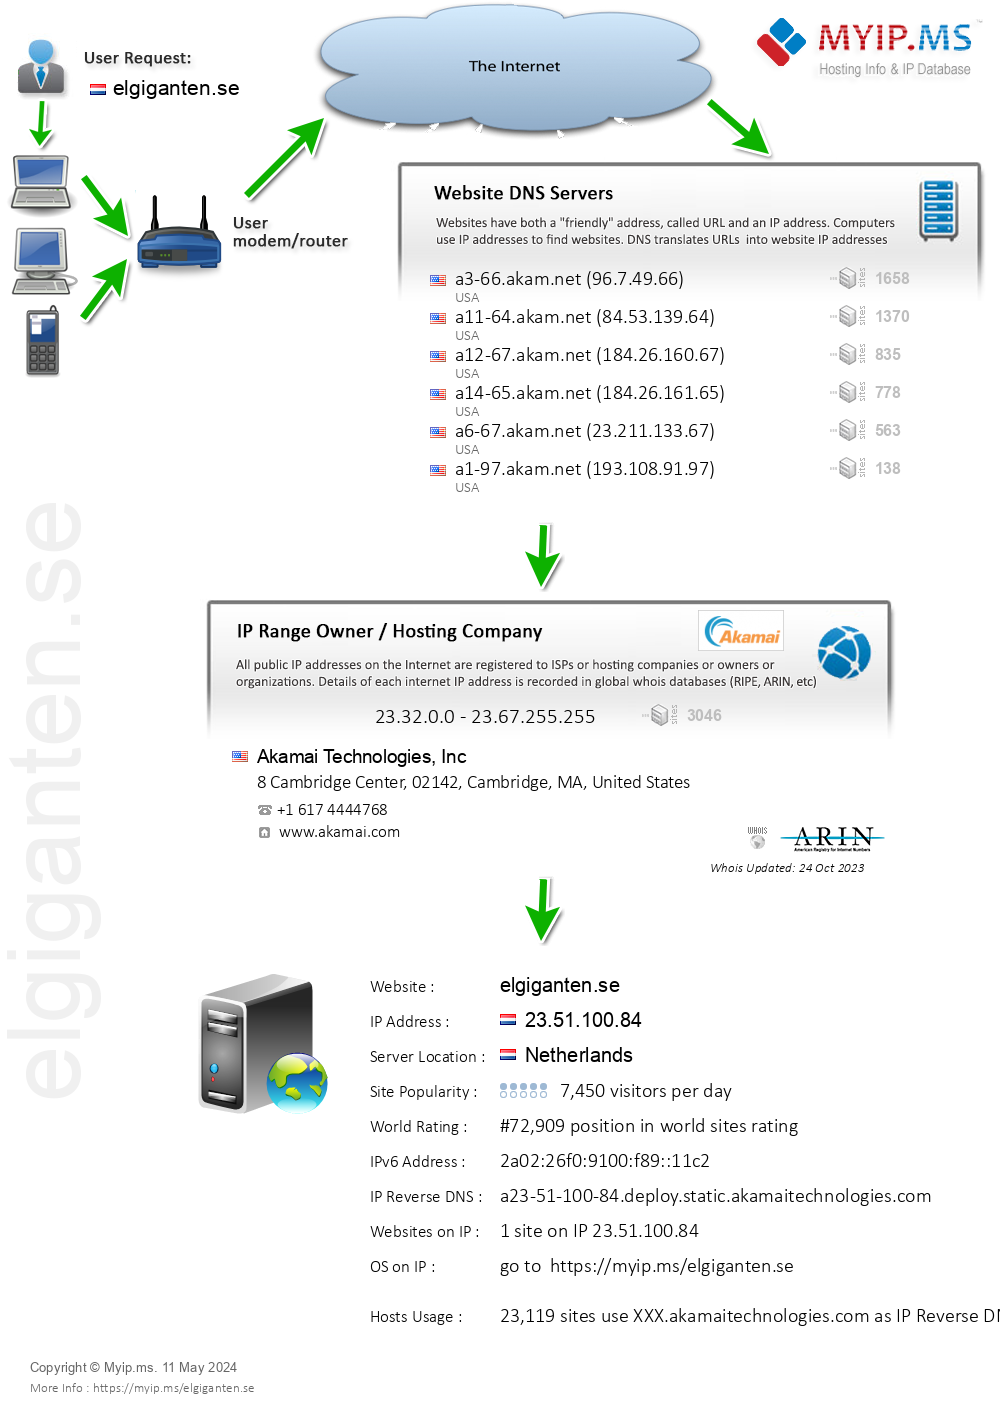 Elgiganten.se - Website Hosting Visual IP Diagram